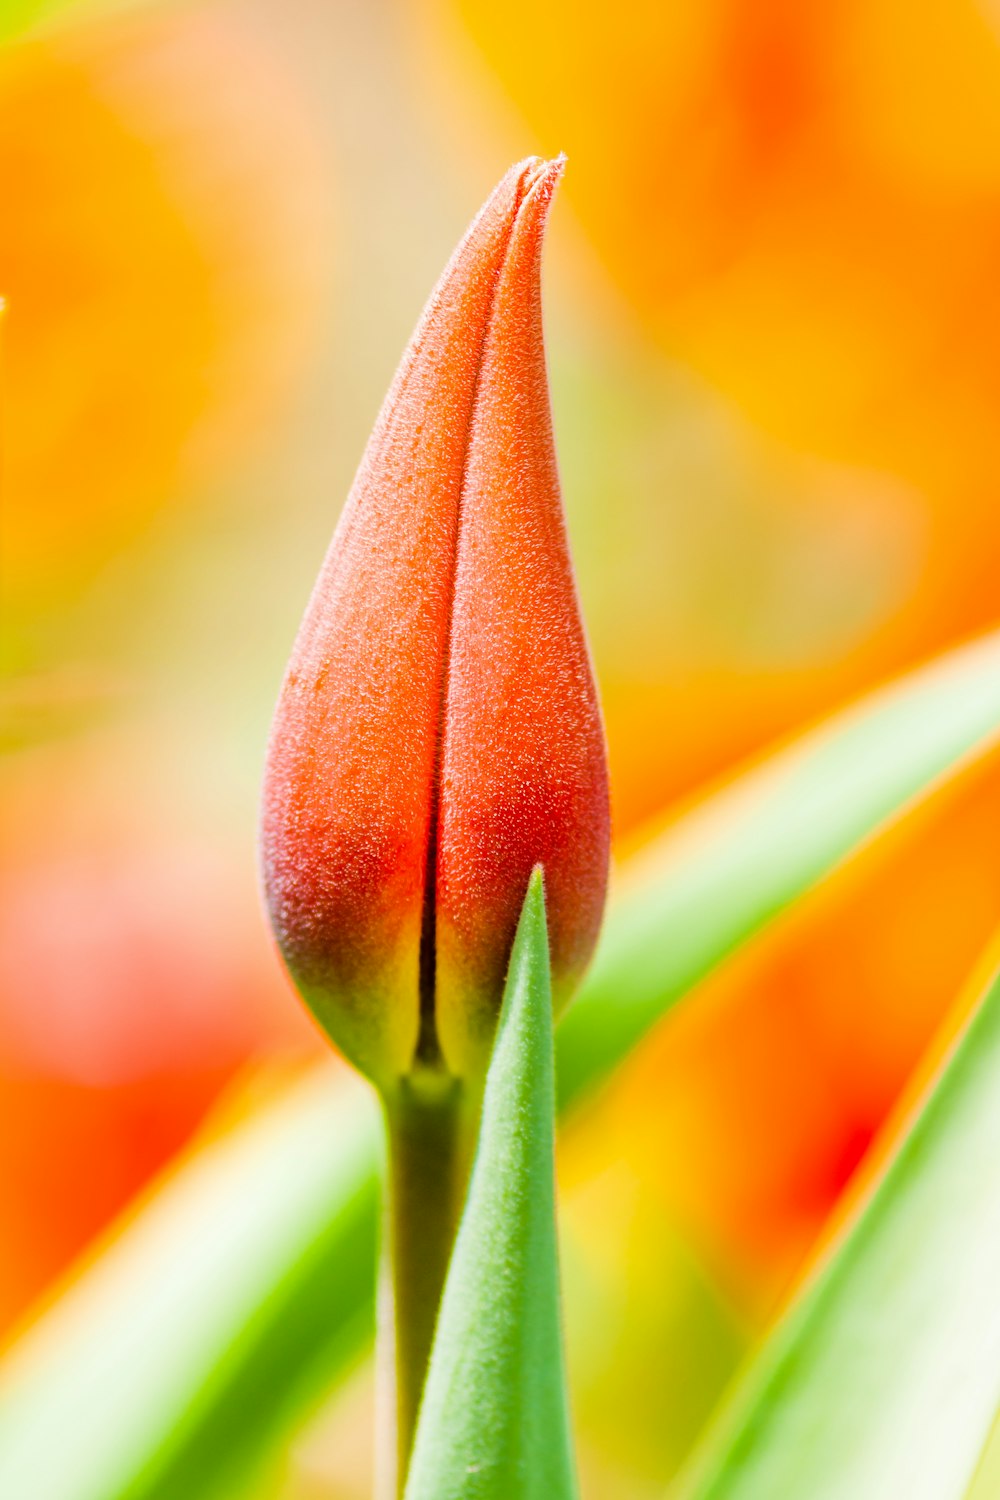 bocciolo di tulipano arancione